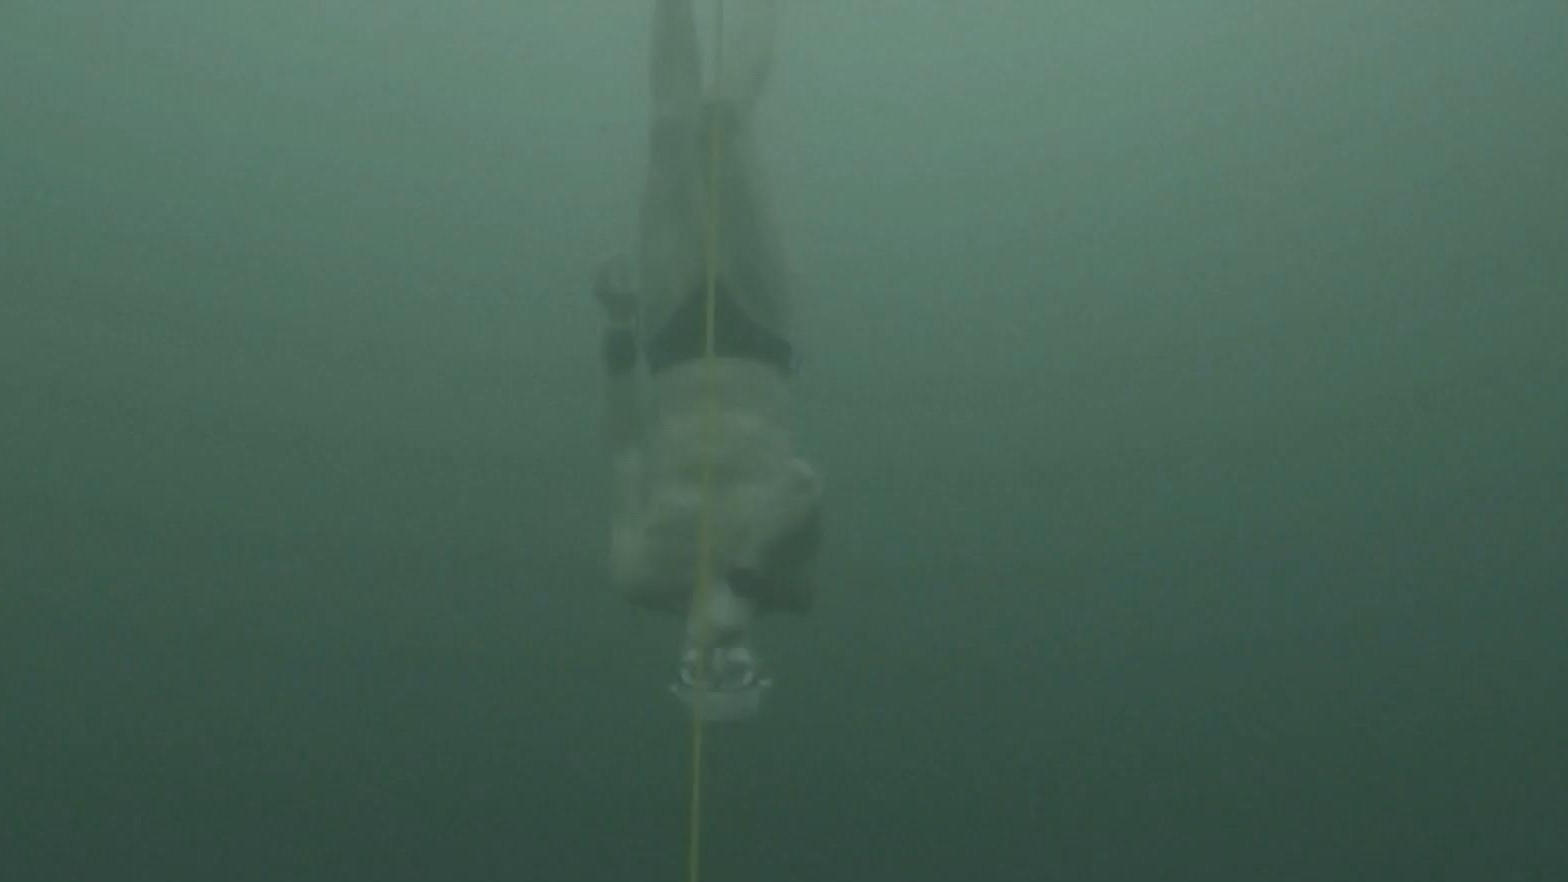 Eistaucher spuckt Blut - und bricht Rekord 52 Meter tief ohne Neoprenanzug